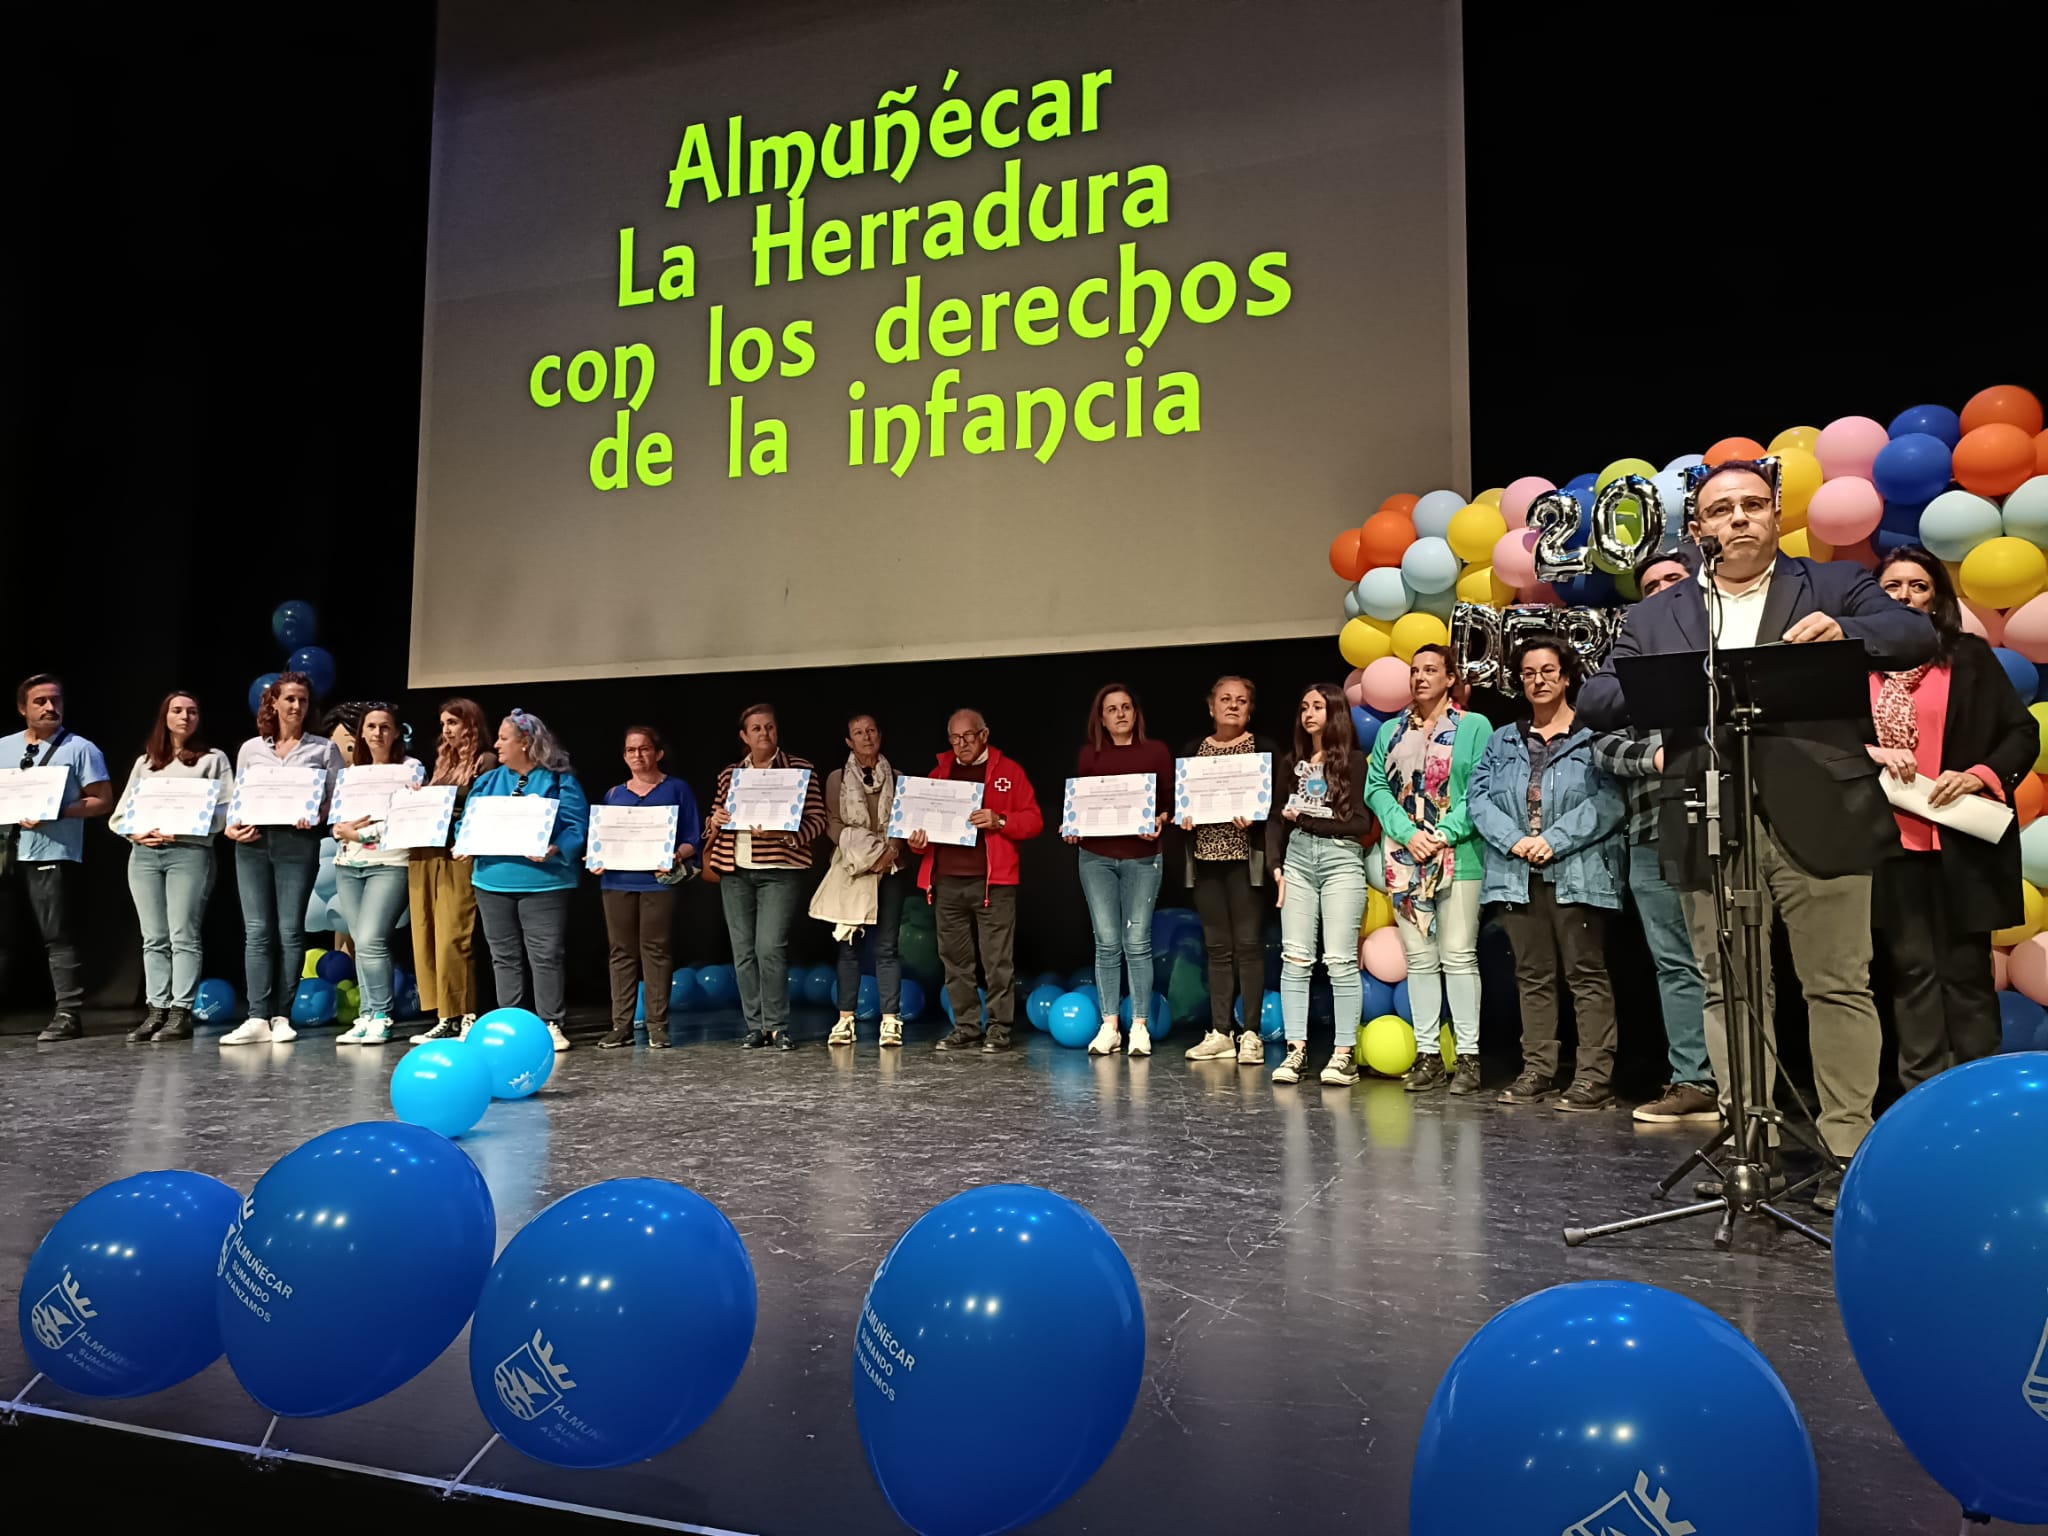 El alcalde de Almuñécar se compromete a velar por los derechos de los niños y niñas.